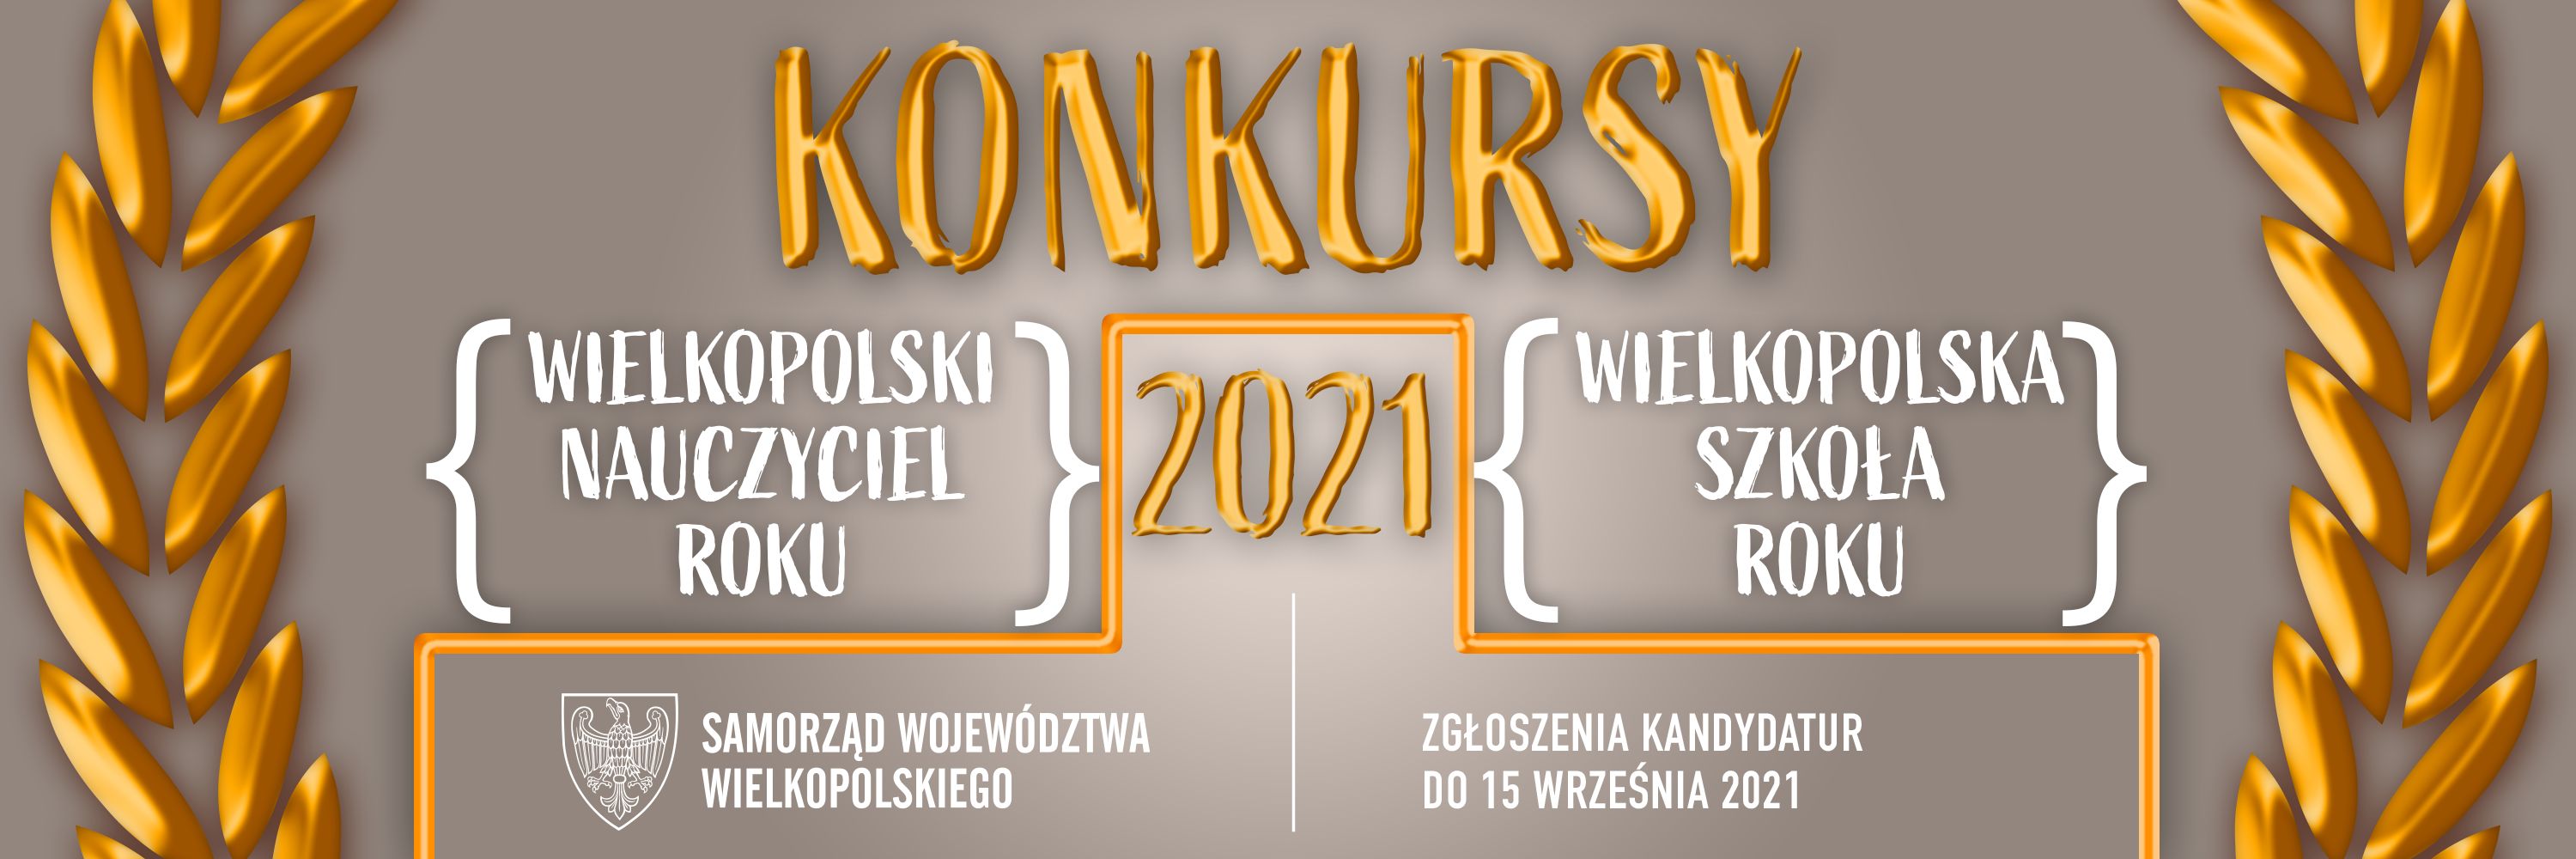 Konkurs Wielkopolska Szkoła Roku Oraz Wielkopolski Nauczyciel Roku Edycja 2021 Centrum 0759